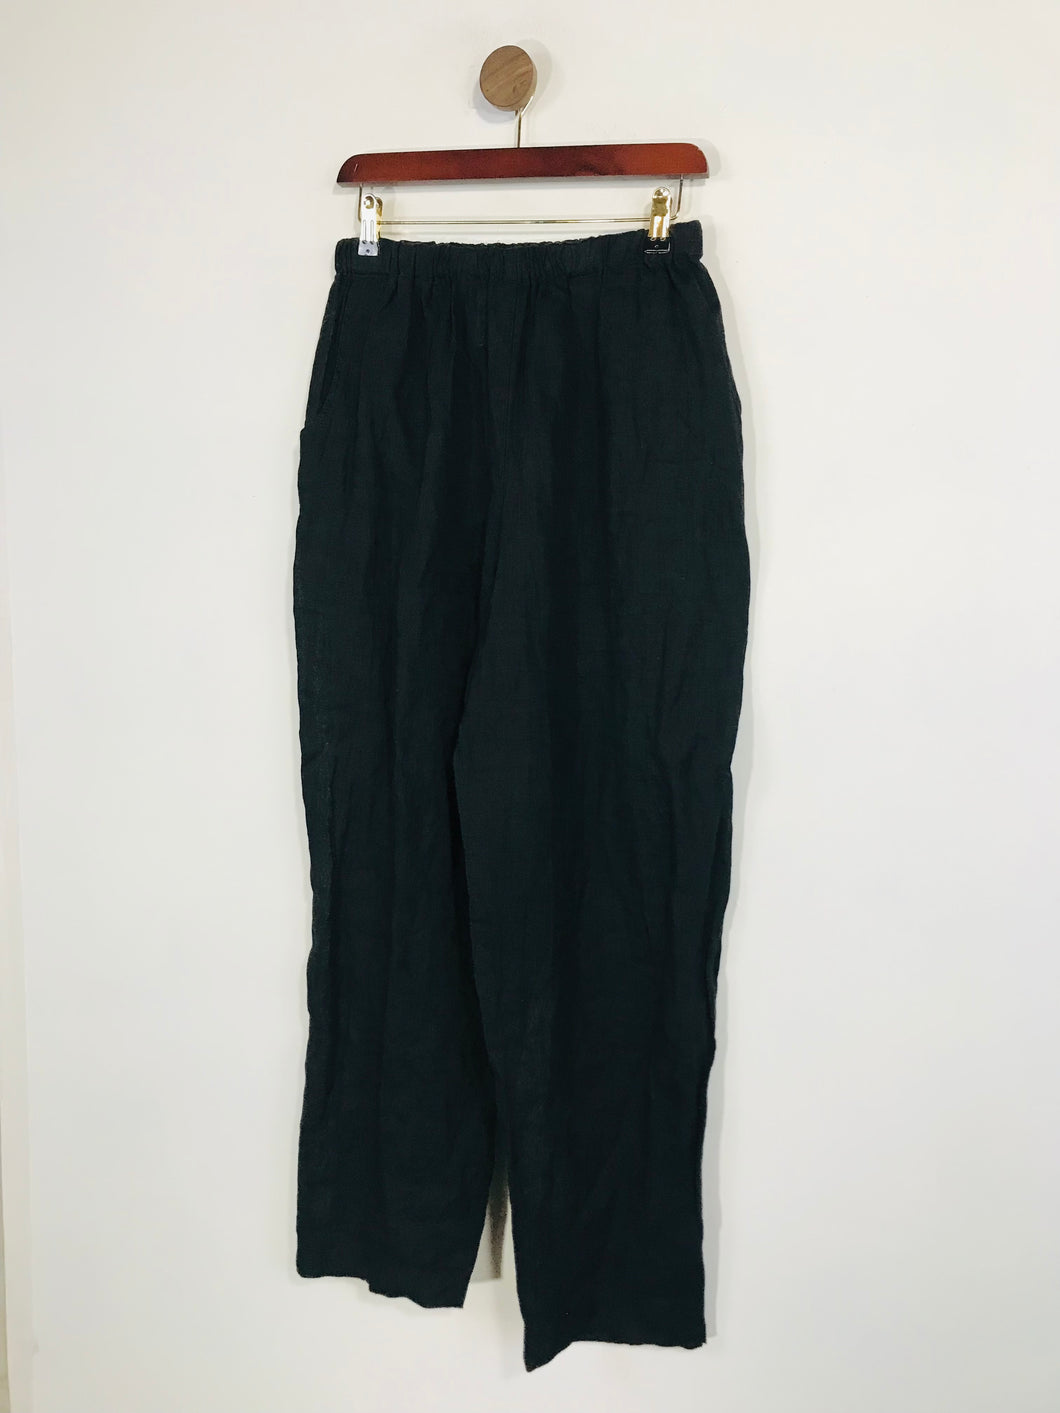 Flax by Jeanne Engelhart Women's Linen Casual Trousers | M UK10-12 | Black